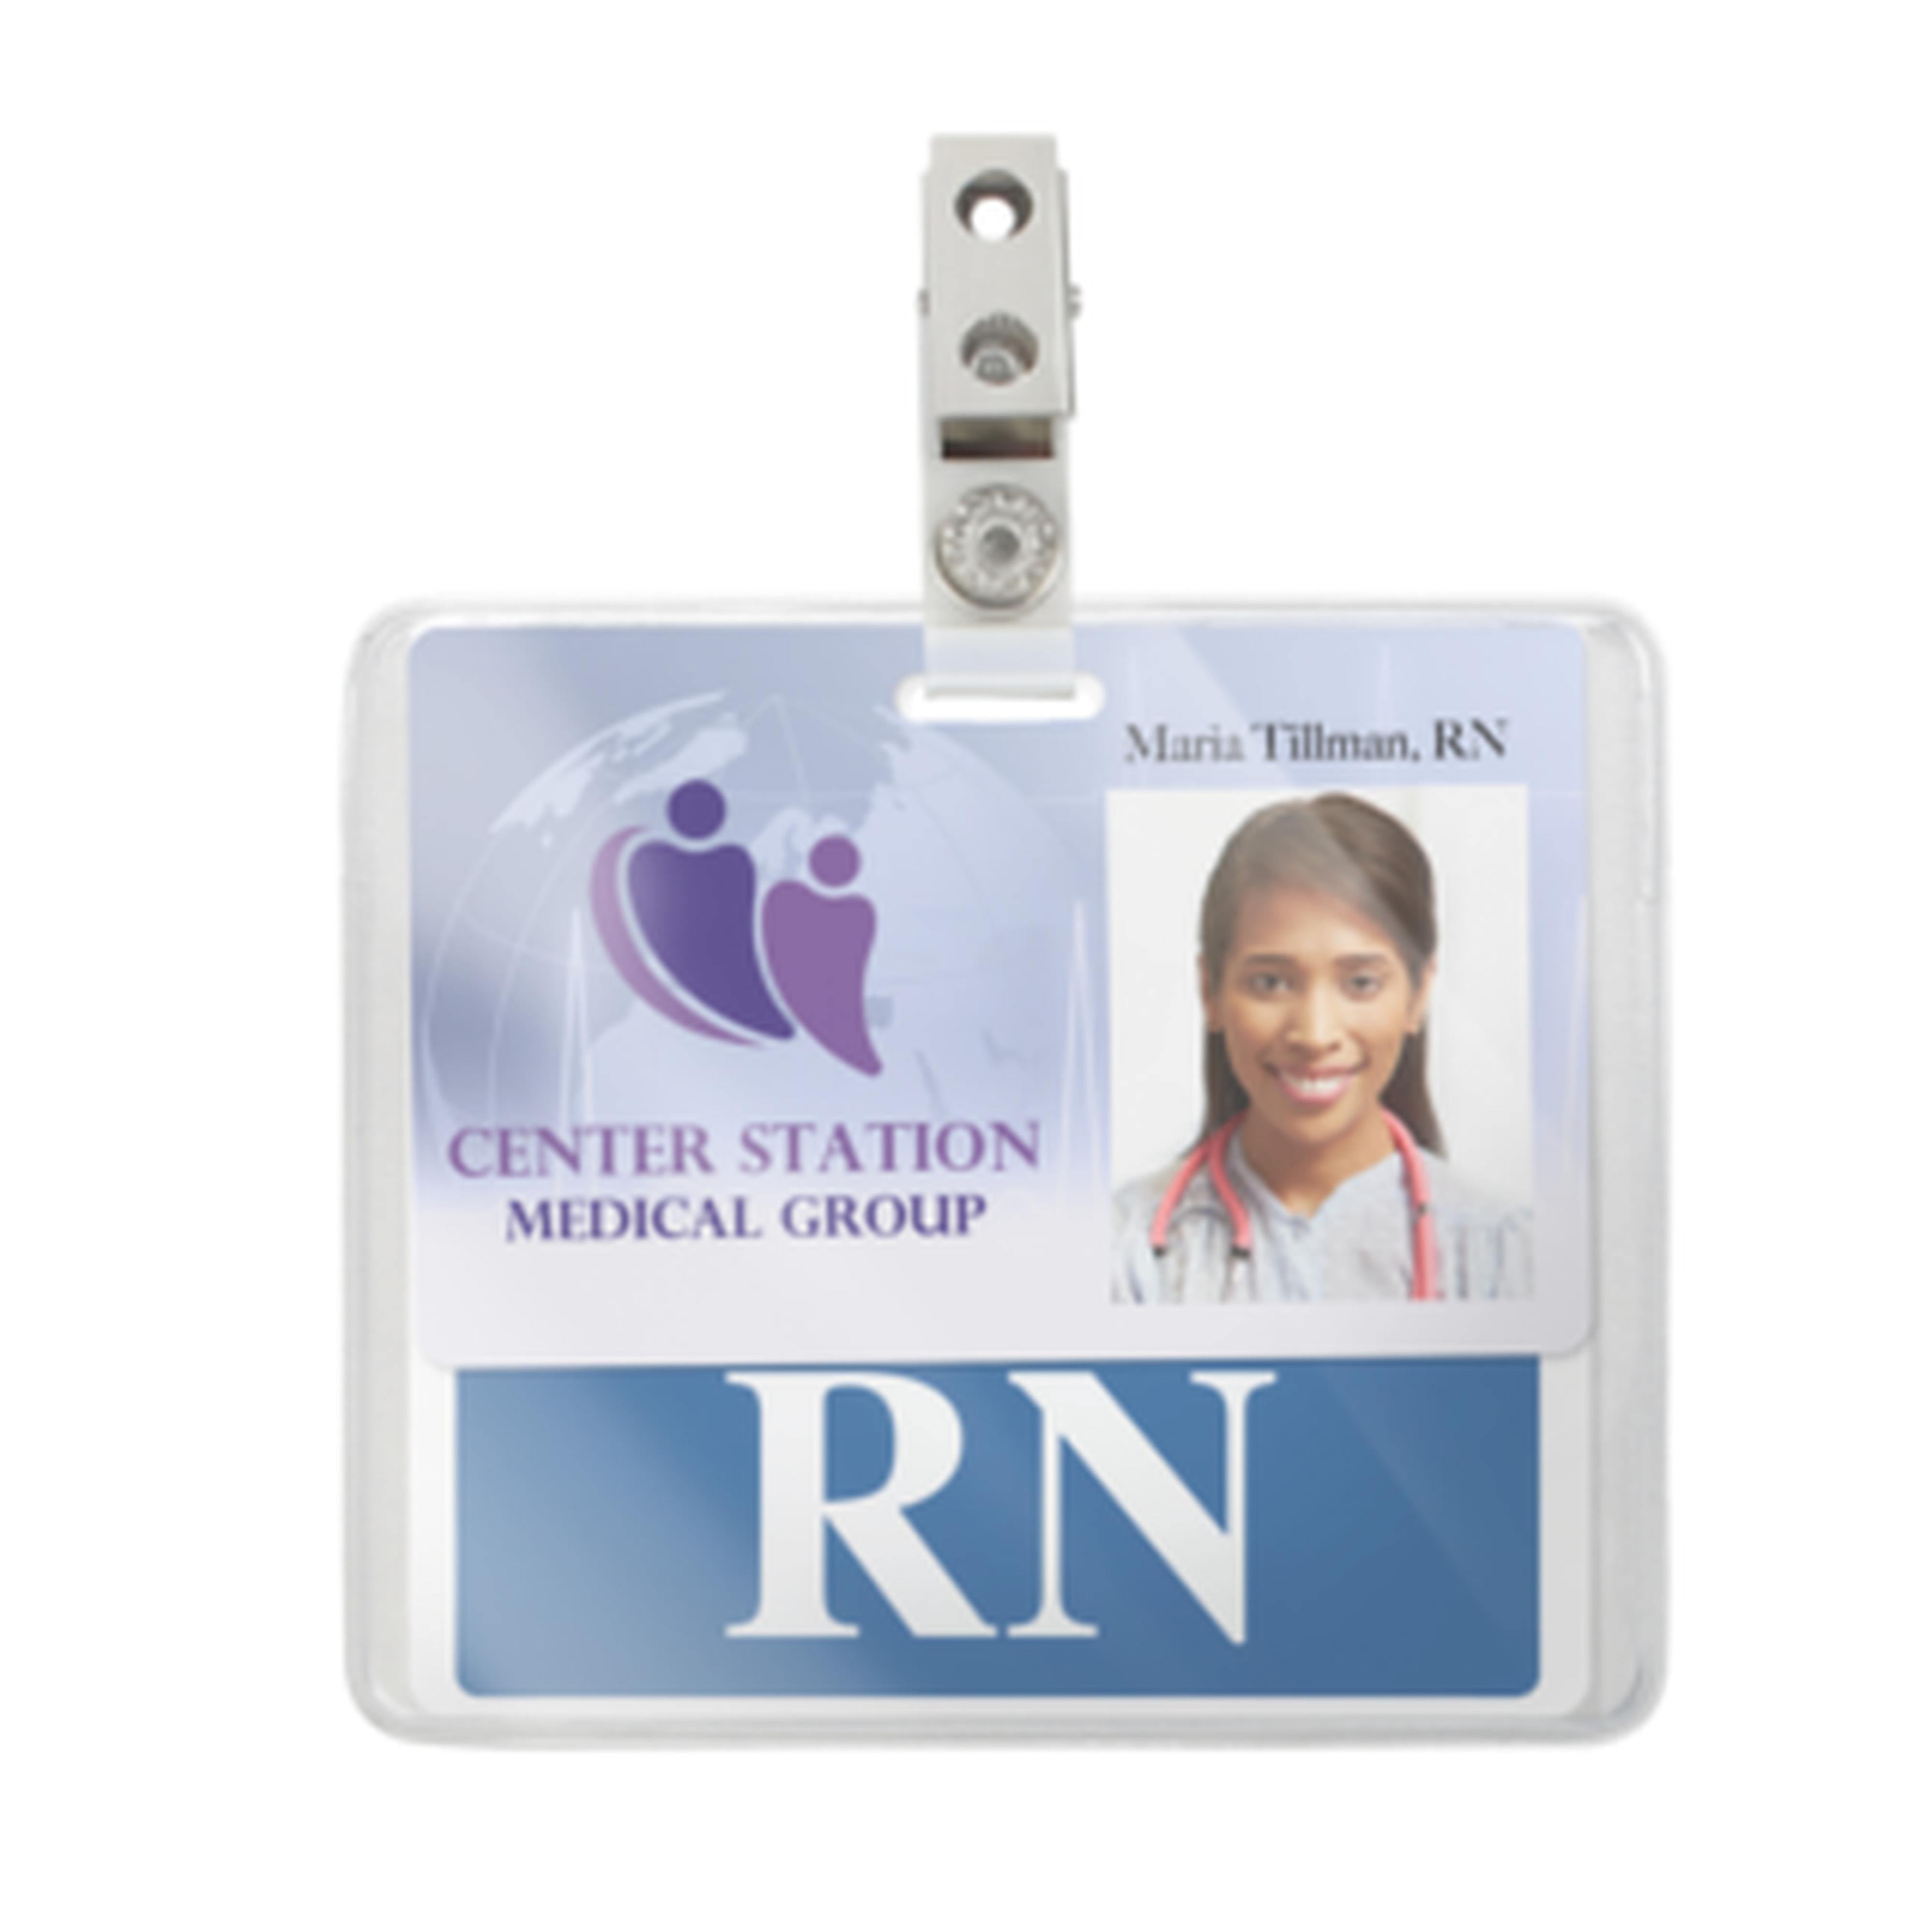 Rn Nurse Badge Reel 